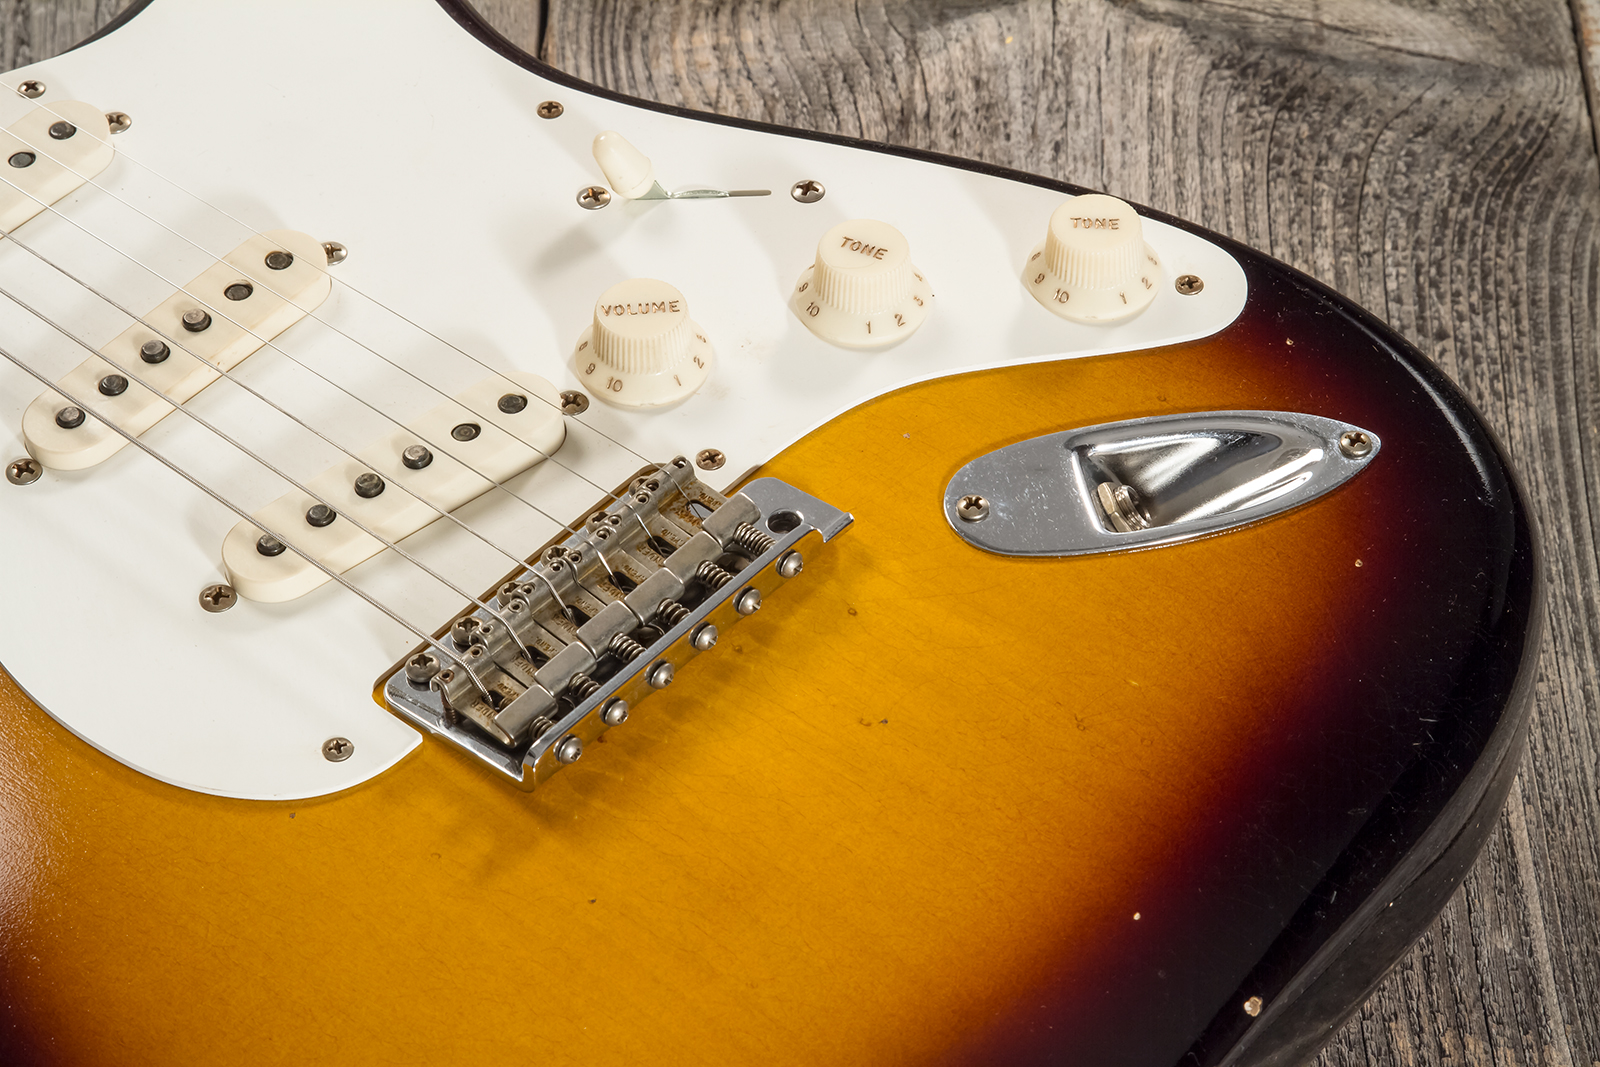 Fender Custom Shop Strat 1956 3s Trem Mn #cz571884 - Journeyman Relic Aged 2-color Sunburst - E-Gitarre in Str-Form - Variation 5